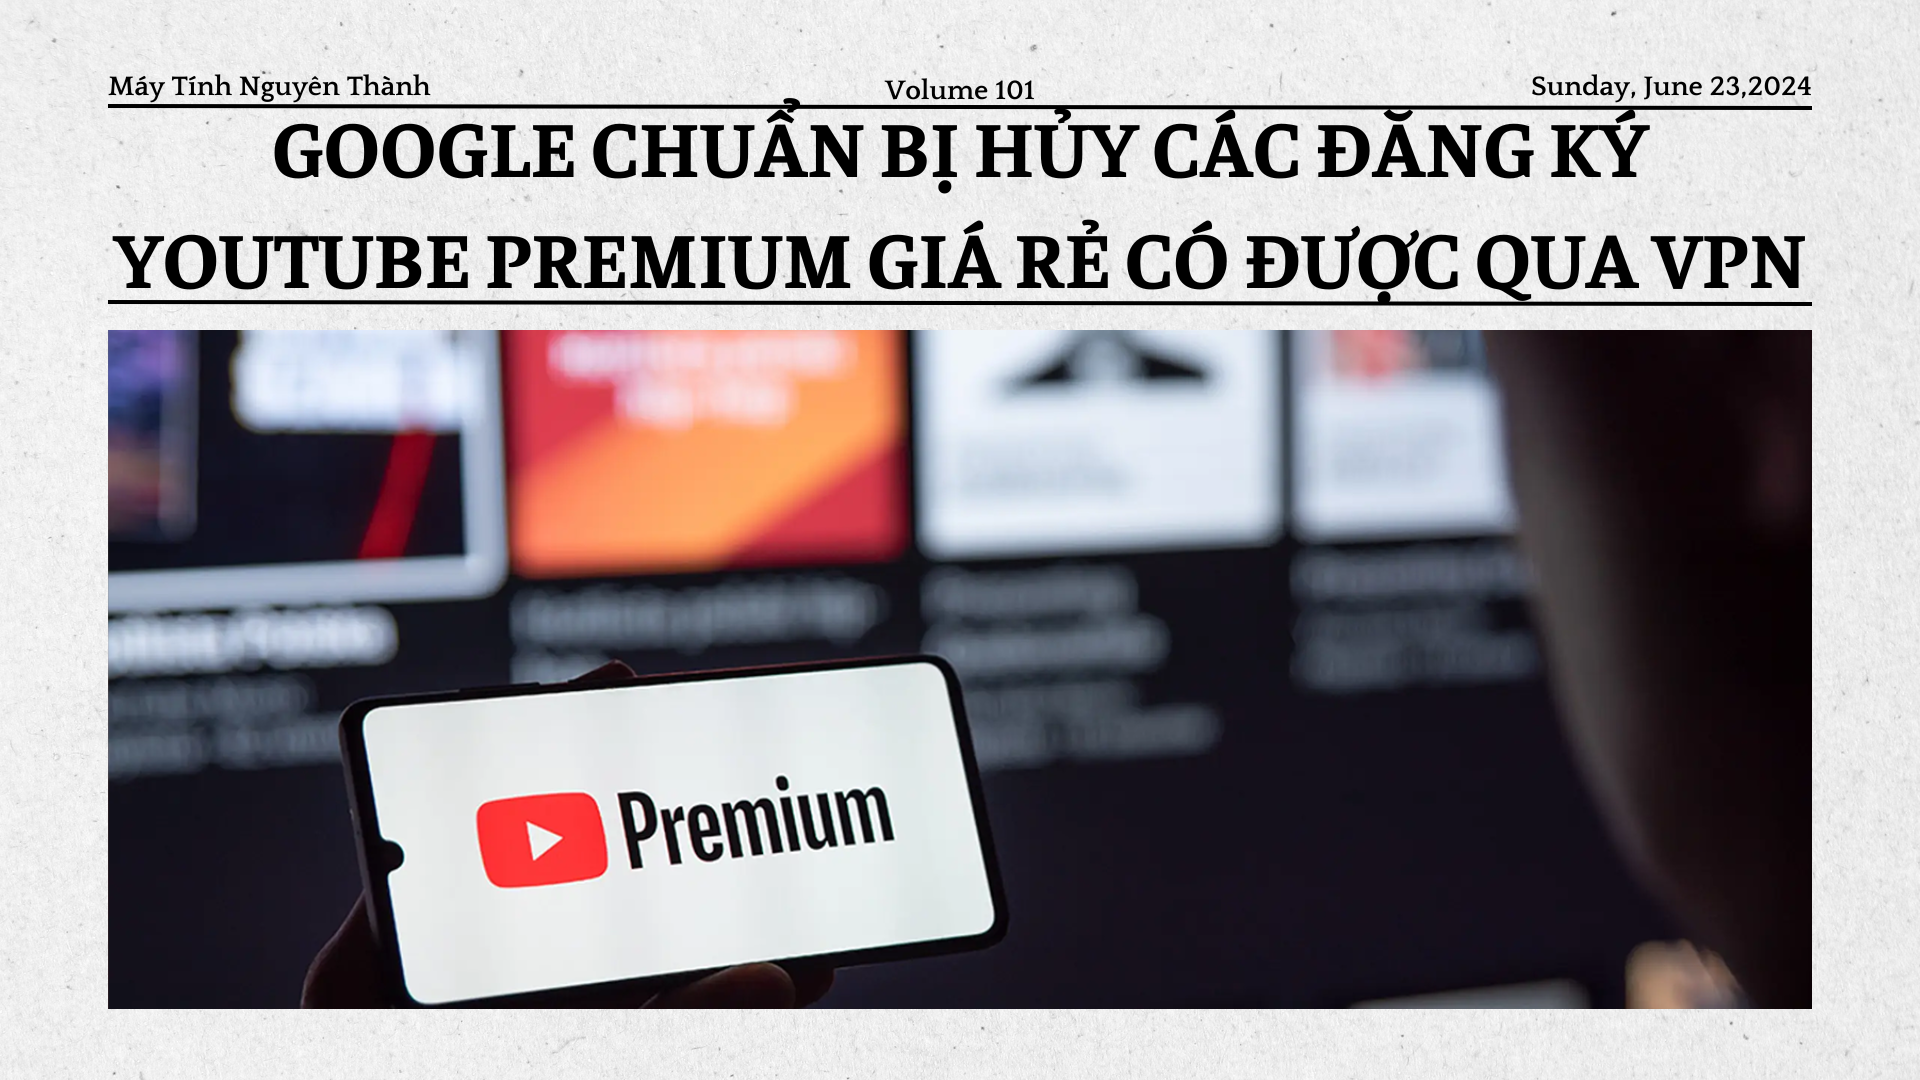 Google hủy đăng ký YouTube Premium giá rẻ có được qua VPN